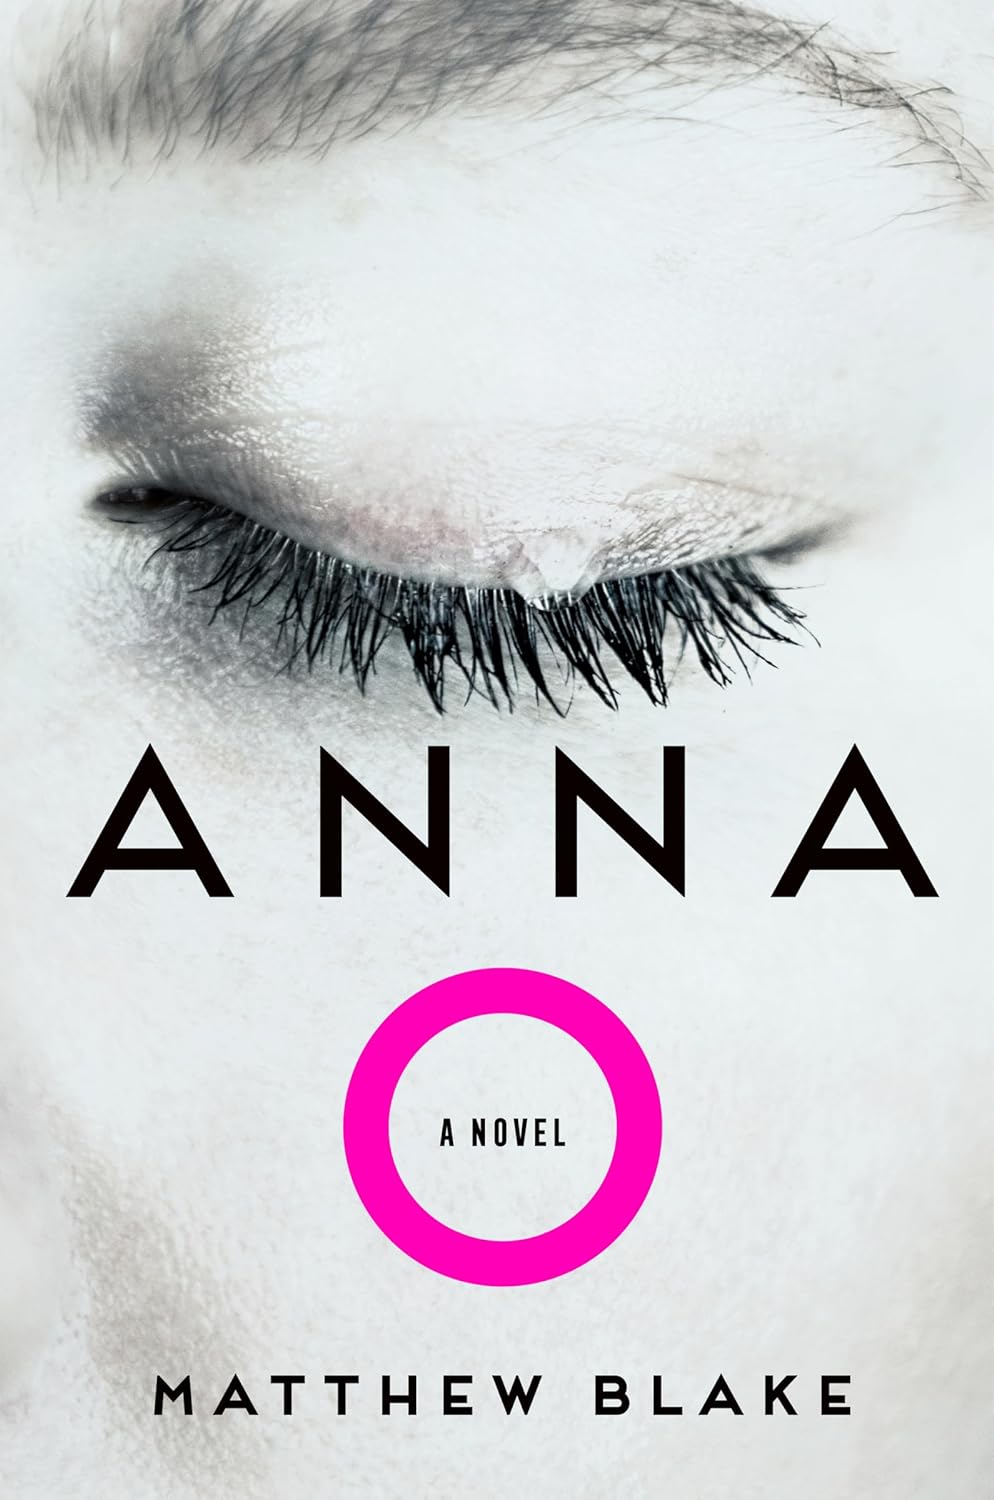 Image for "Anna O"